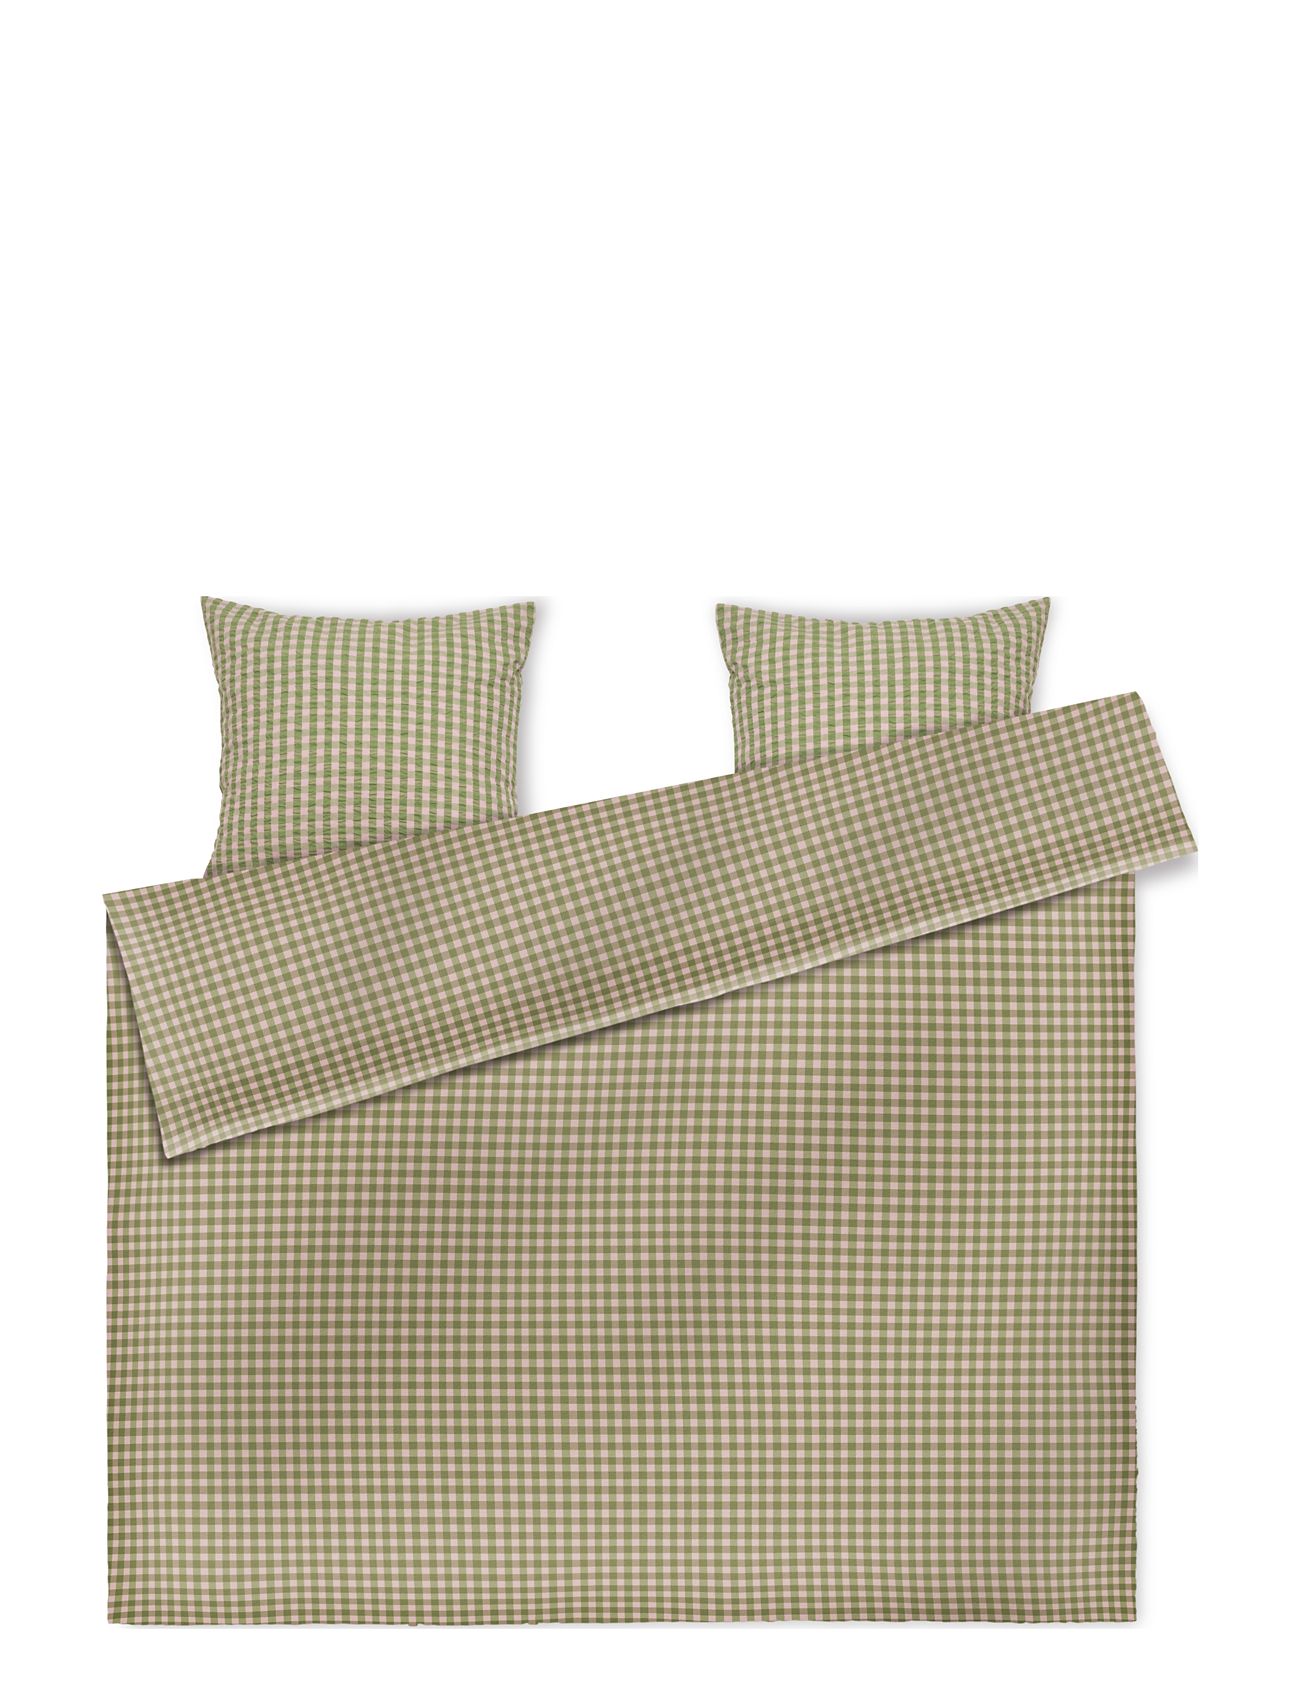 Bæk&Bølge Sengetøj 200X220 Cm Grøn/Soft Pink Dk Home Textiles Bedtextiles Bed Sets Green Juna